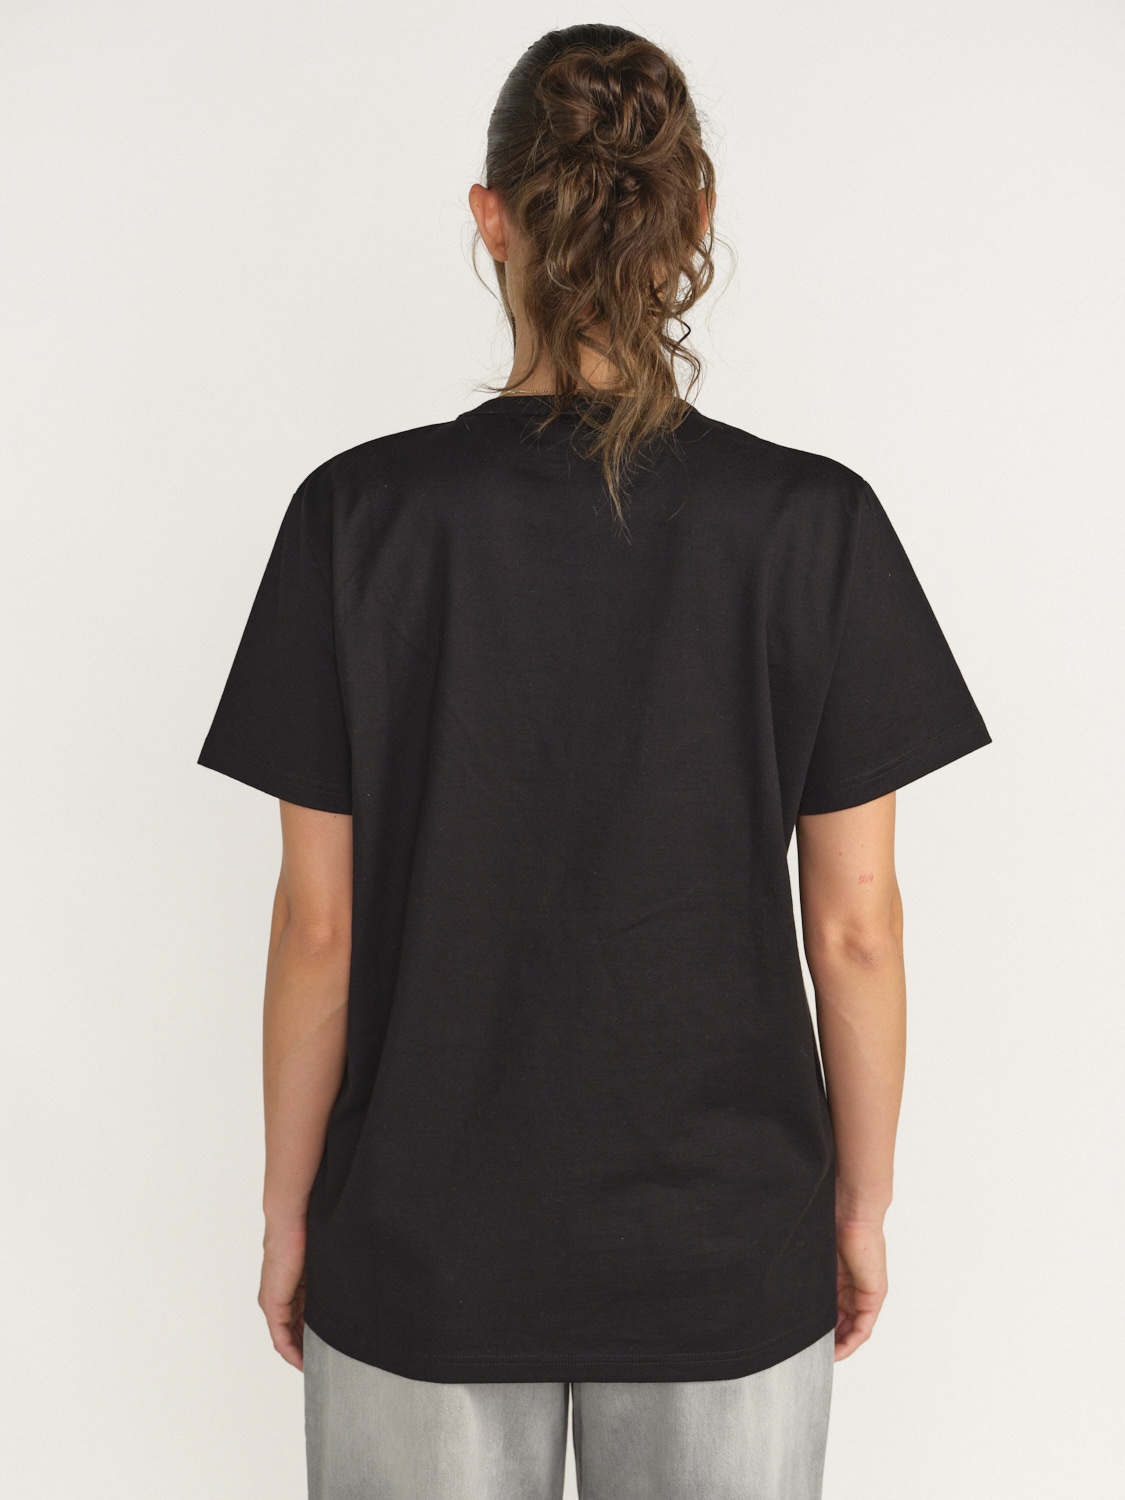 Barrie Barrie - Thistle - T - Shirt avec logo écusson braun XS